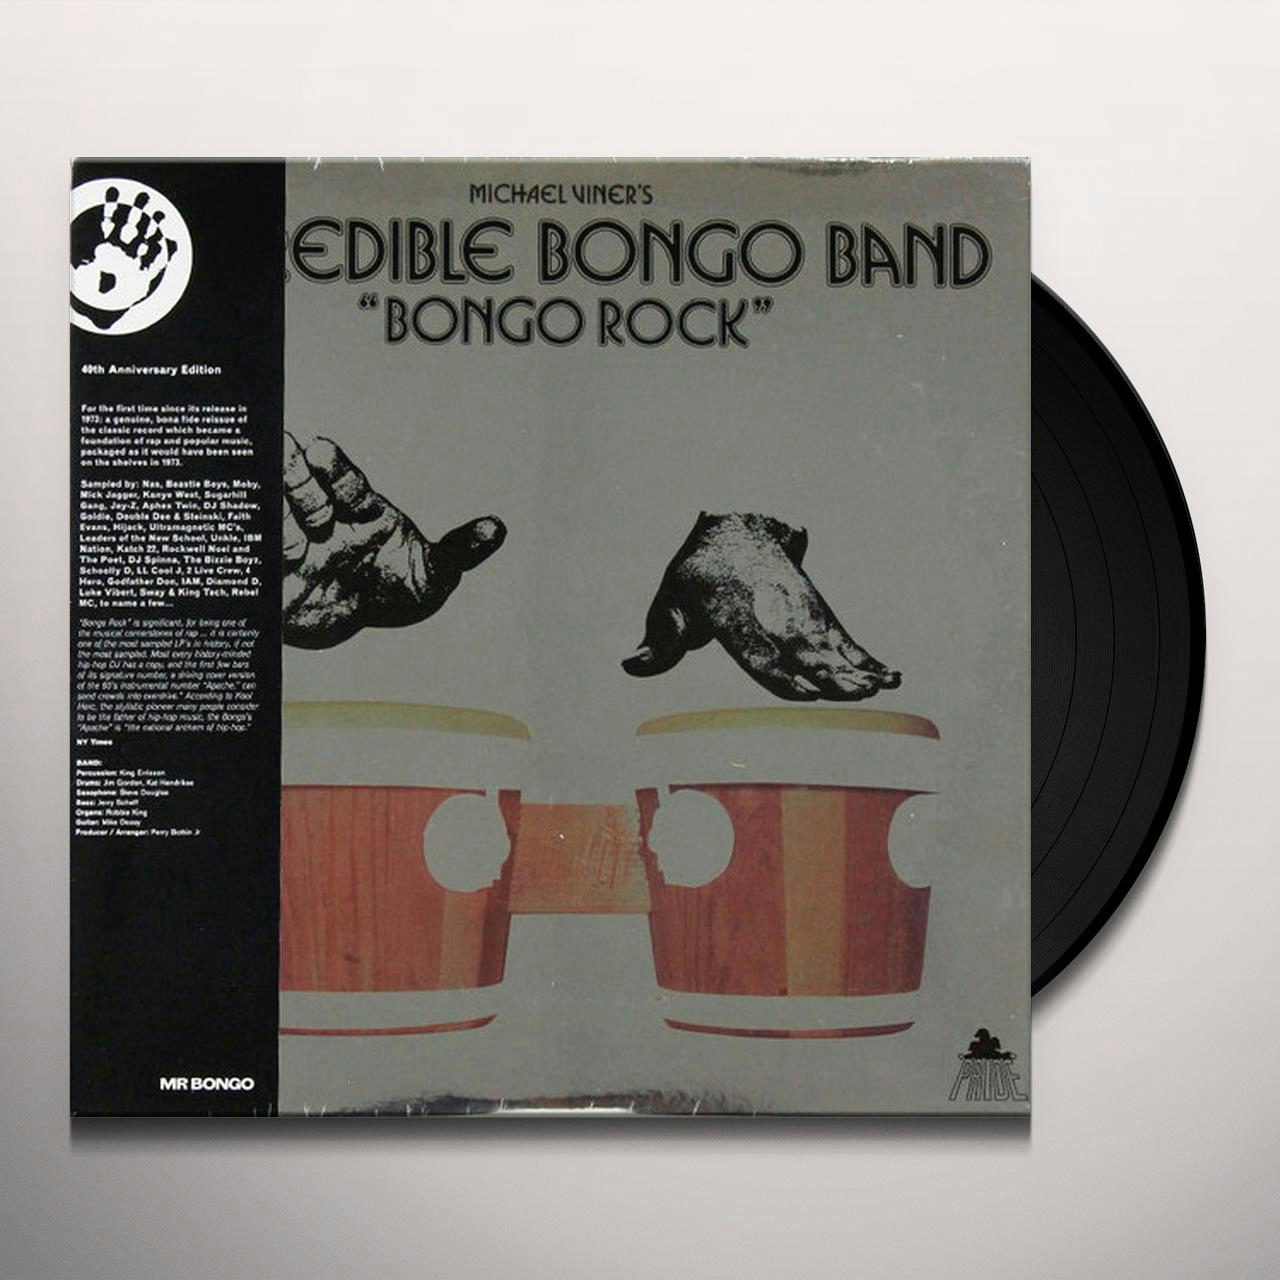 APACHE Vinyl Record - Incredible Bongo Band